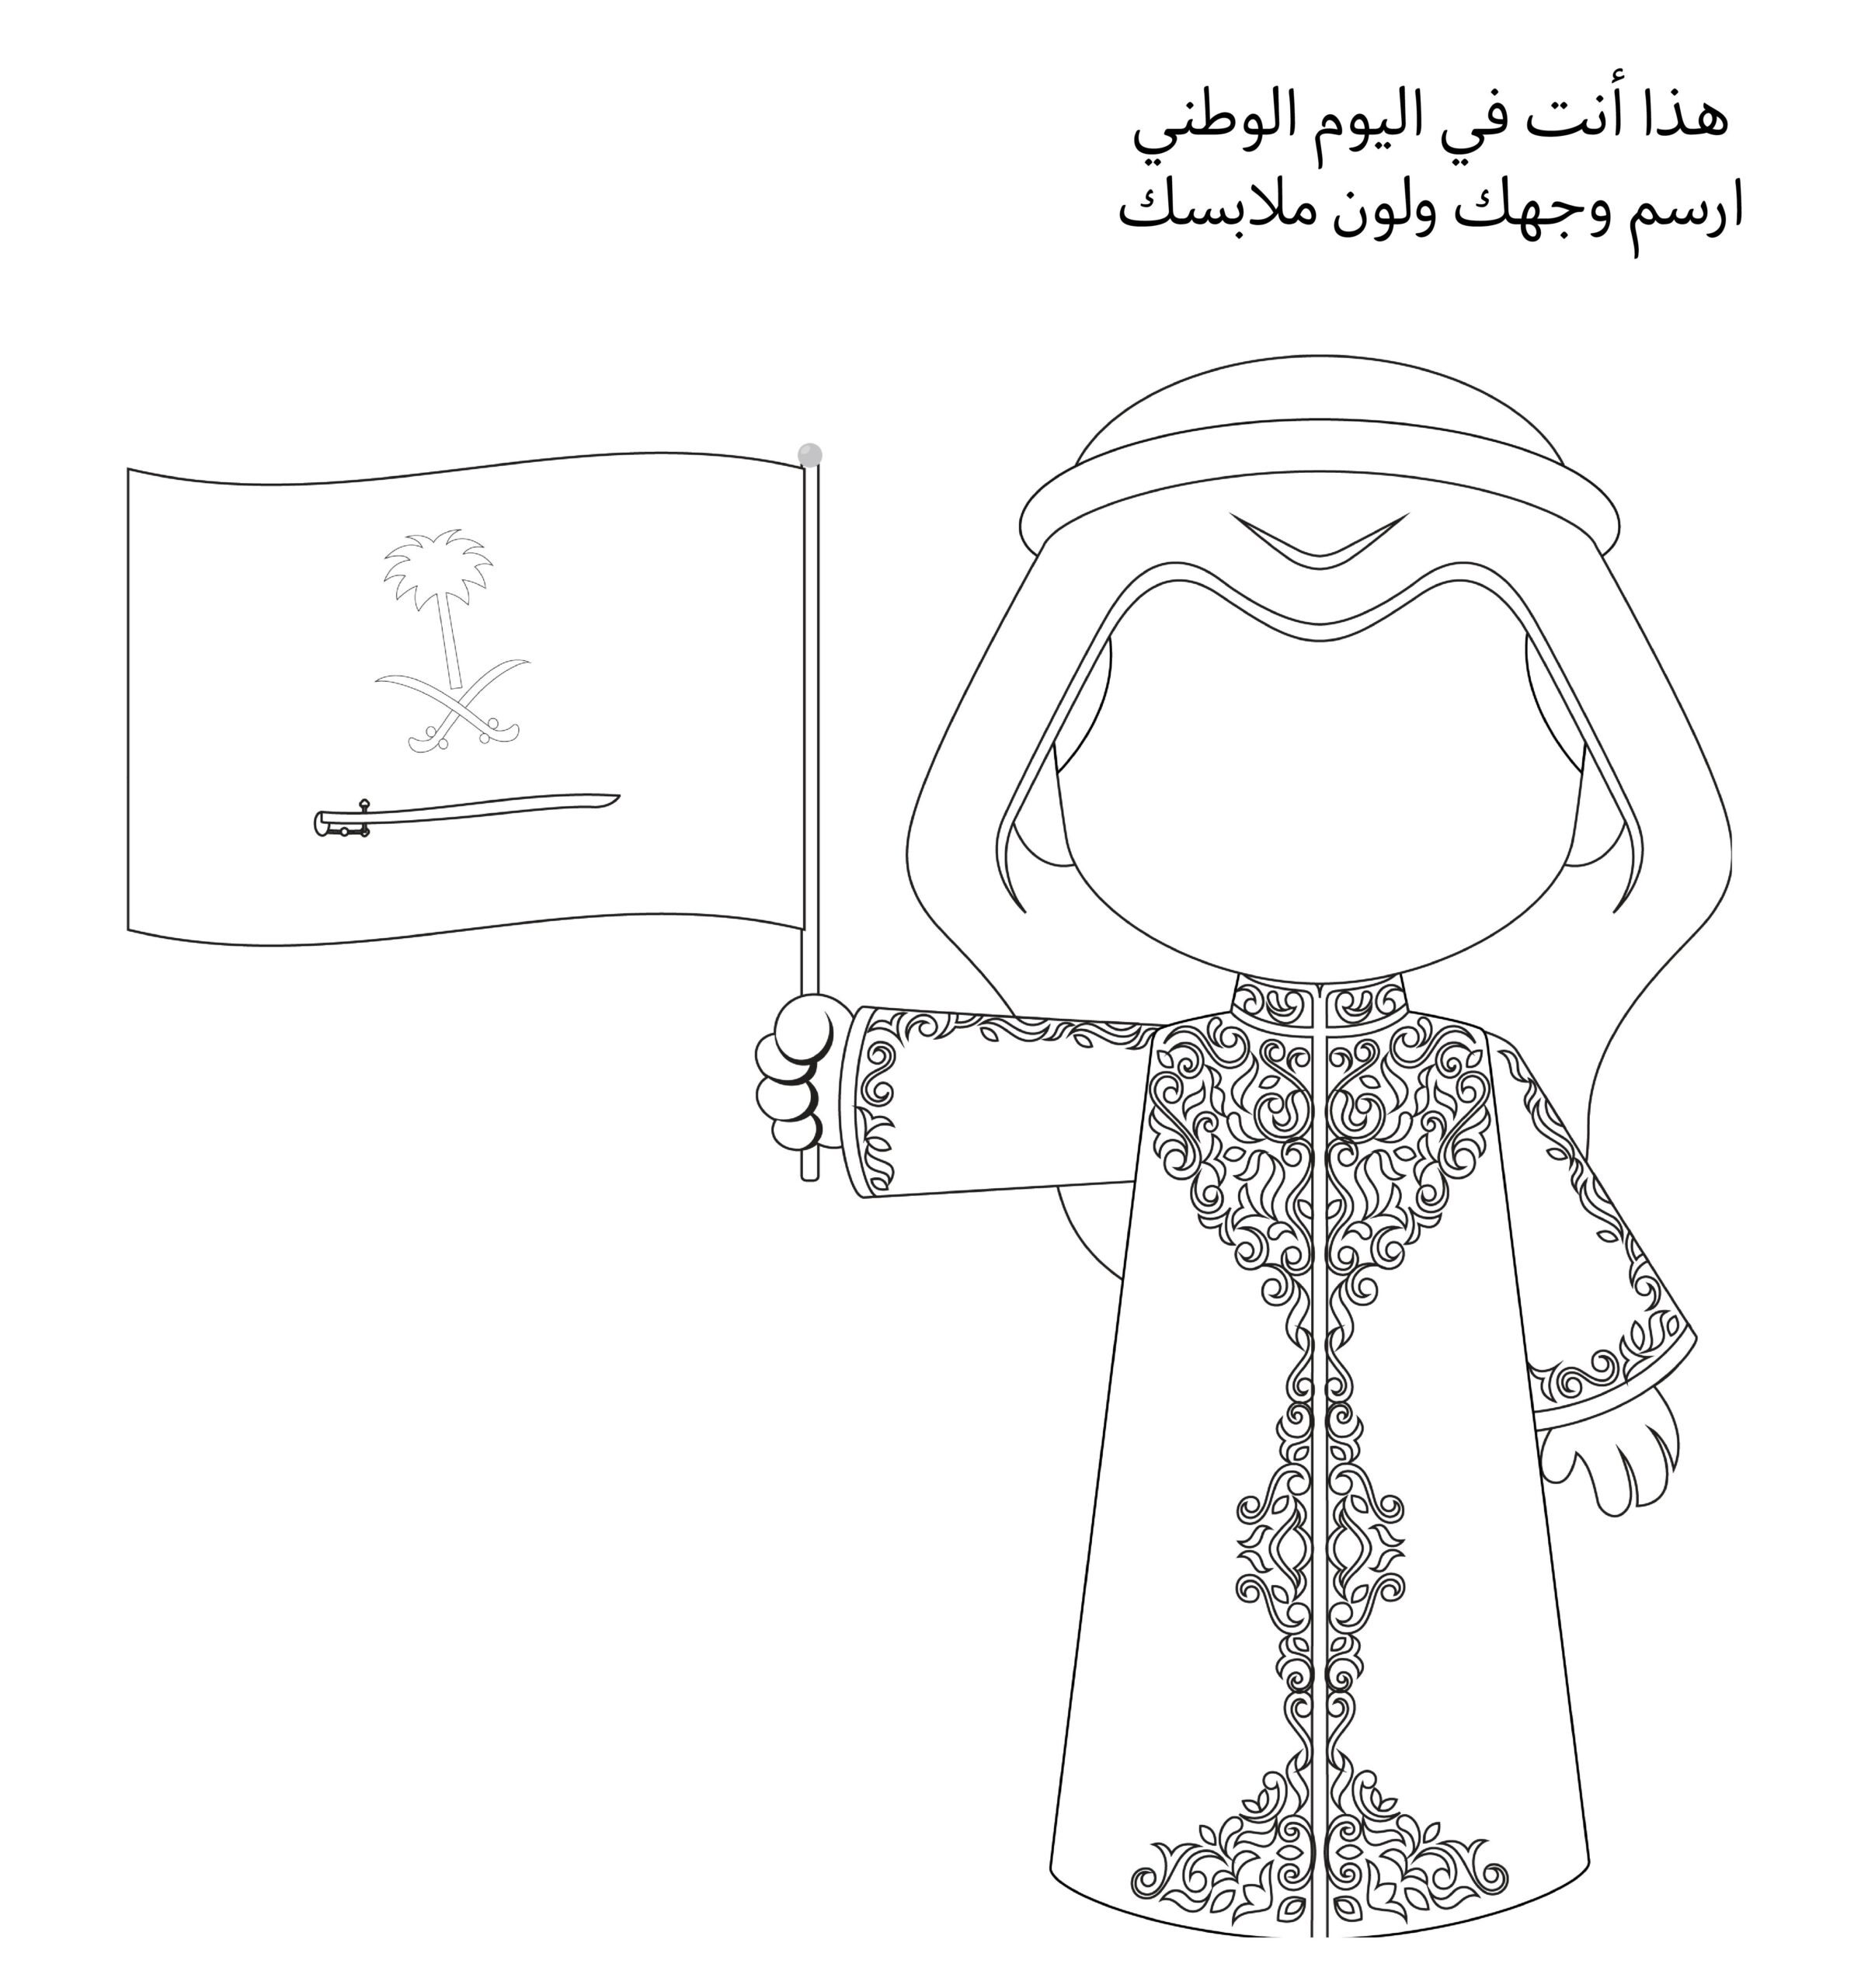 رسومات مفرغة للتلوين عن اليوم الوطني السعودي